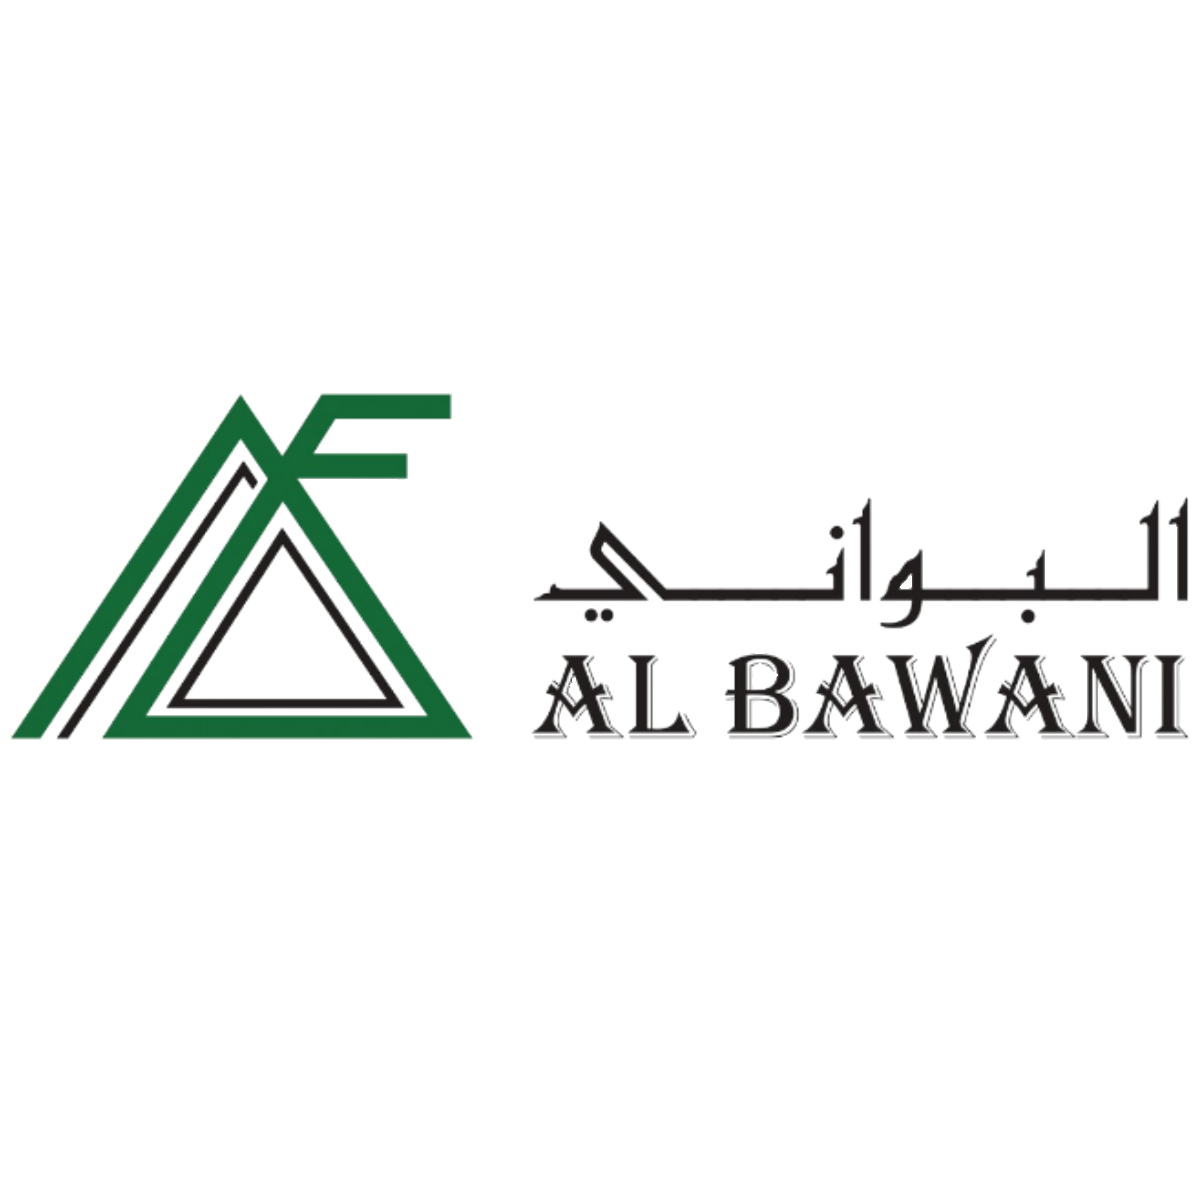 Albawani